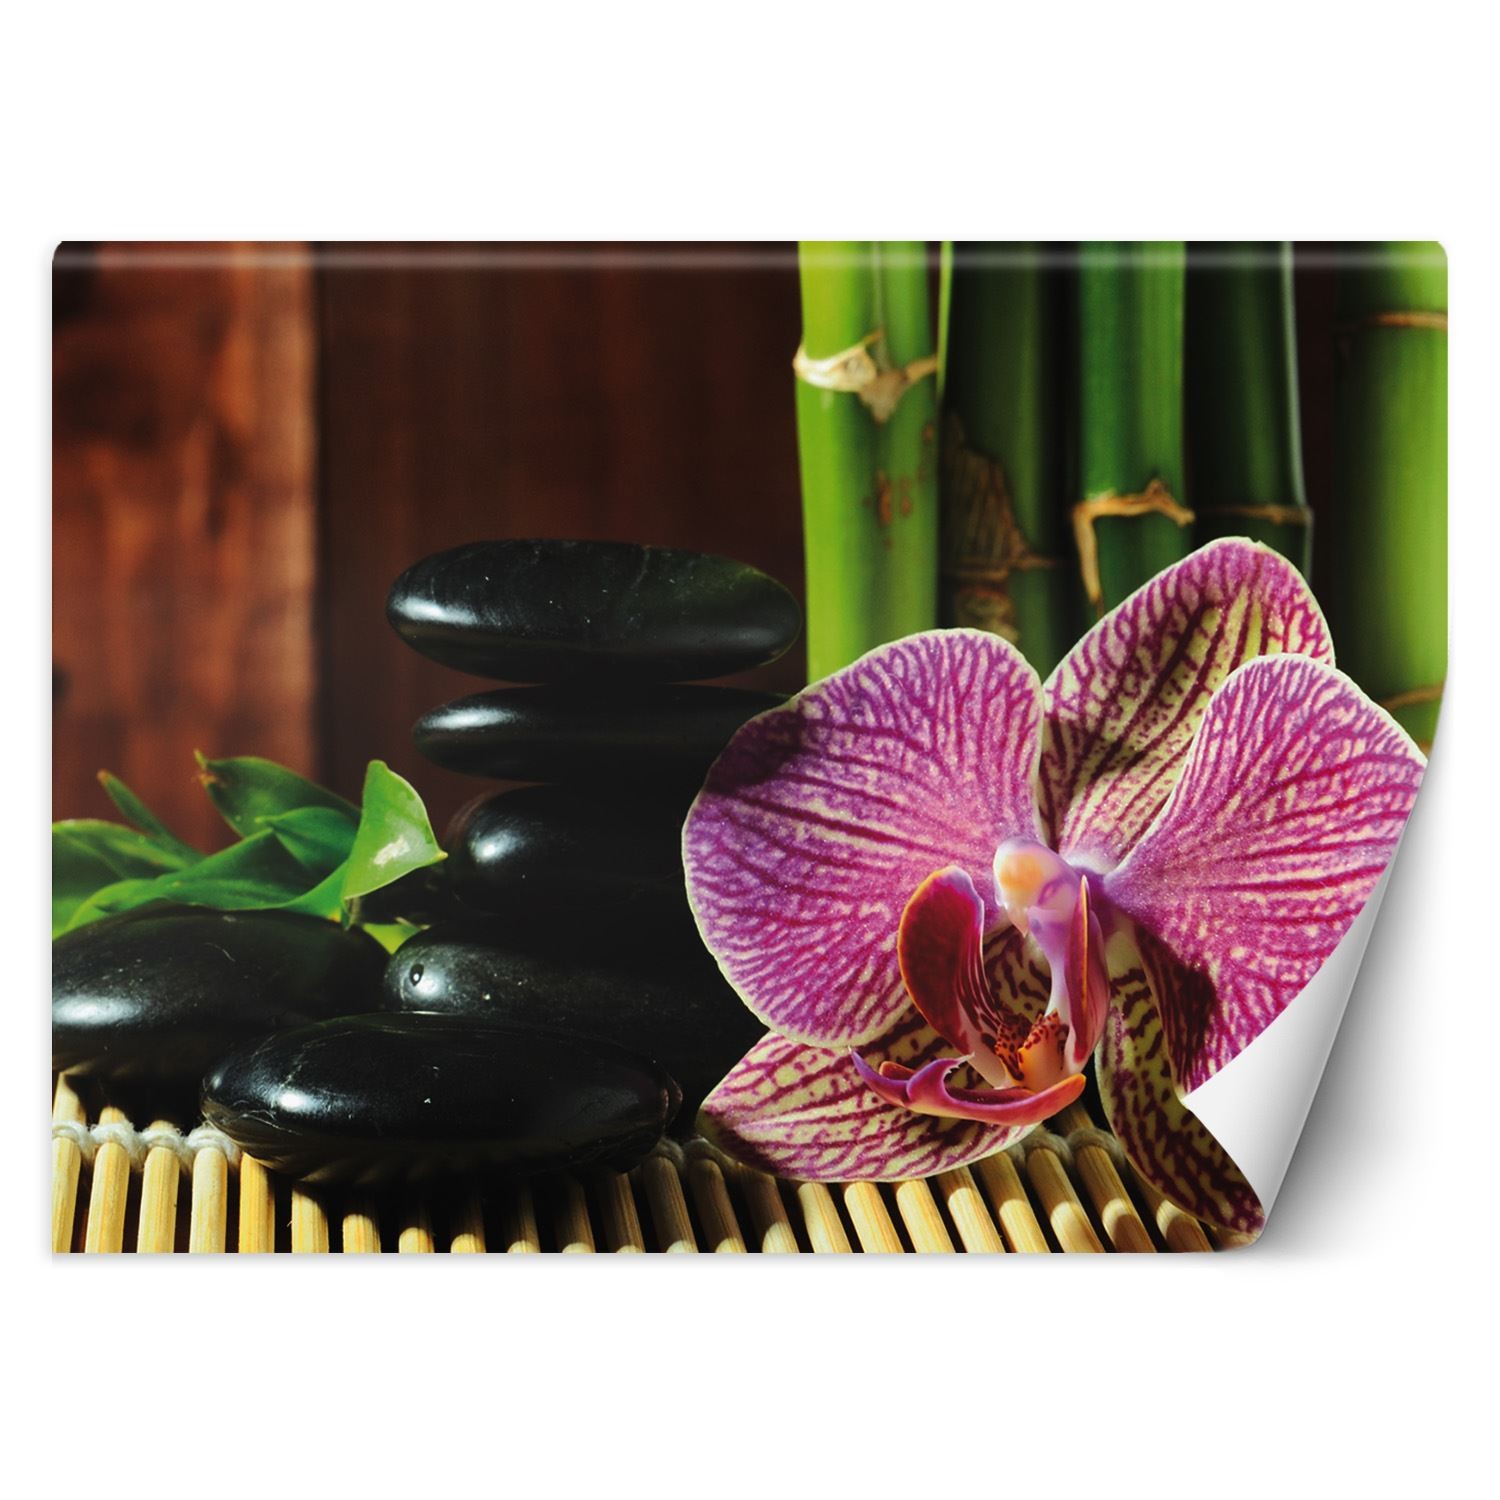 Trend24 – Behang – Orchid – Behangpapier – Fotobehang – Behang Woonkamer – 450x315x2 cm – Incl. behanglijm